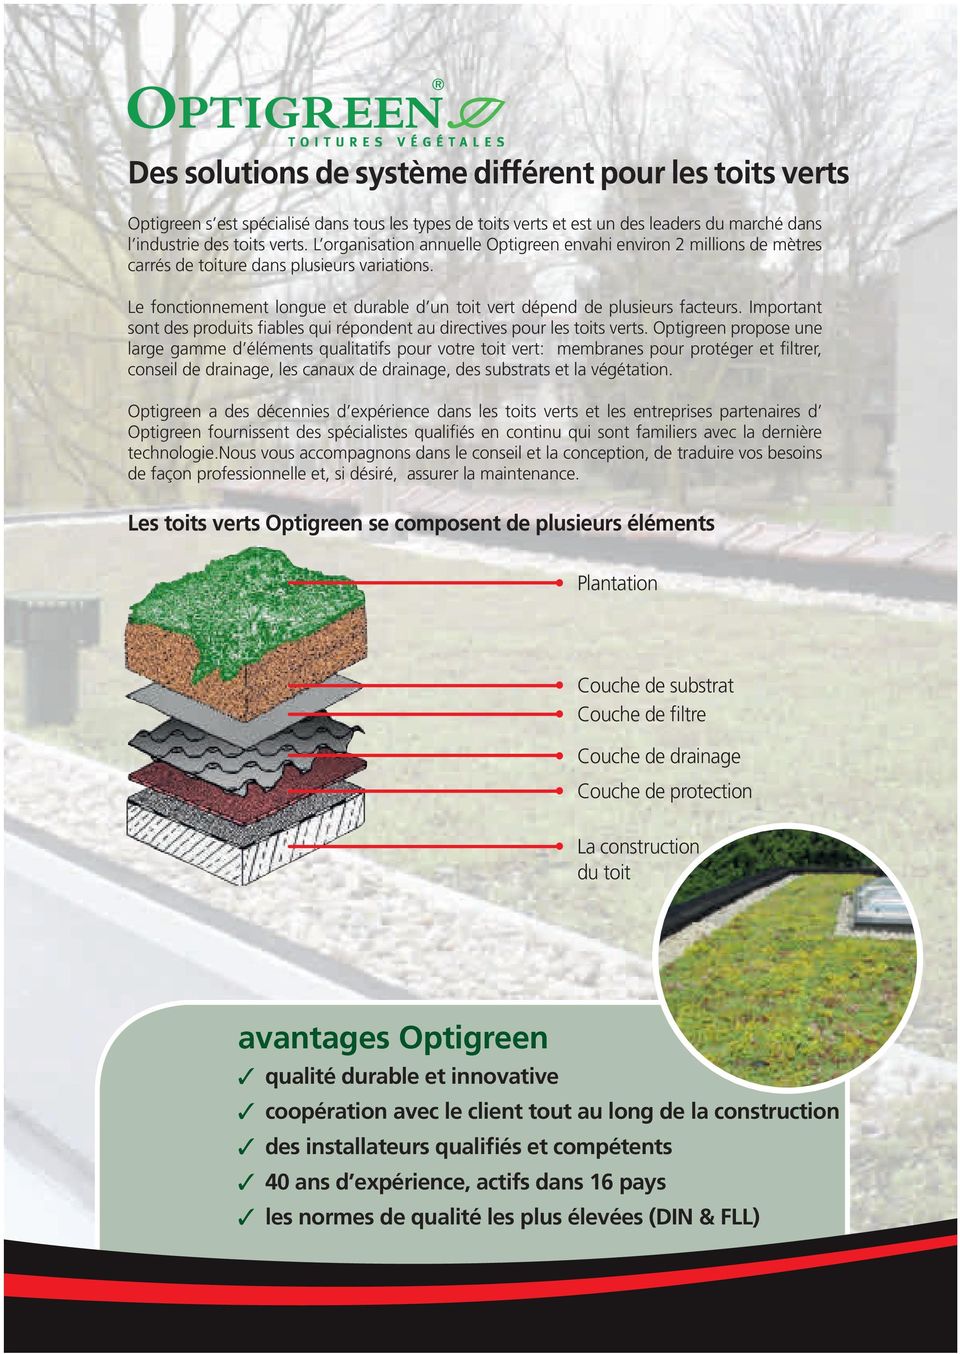 Important sont des produits fiables qui répondent au directives pour les toits verts.